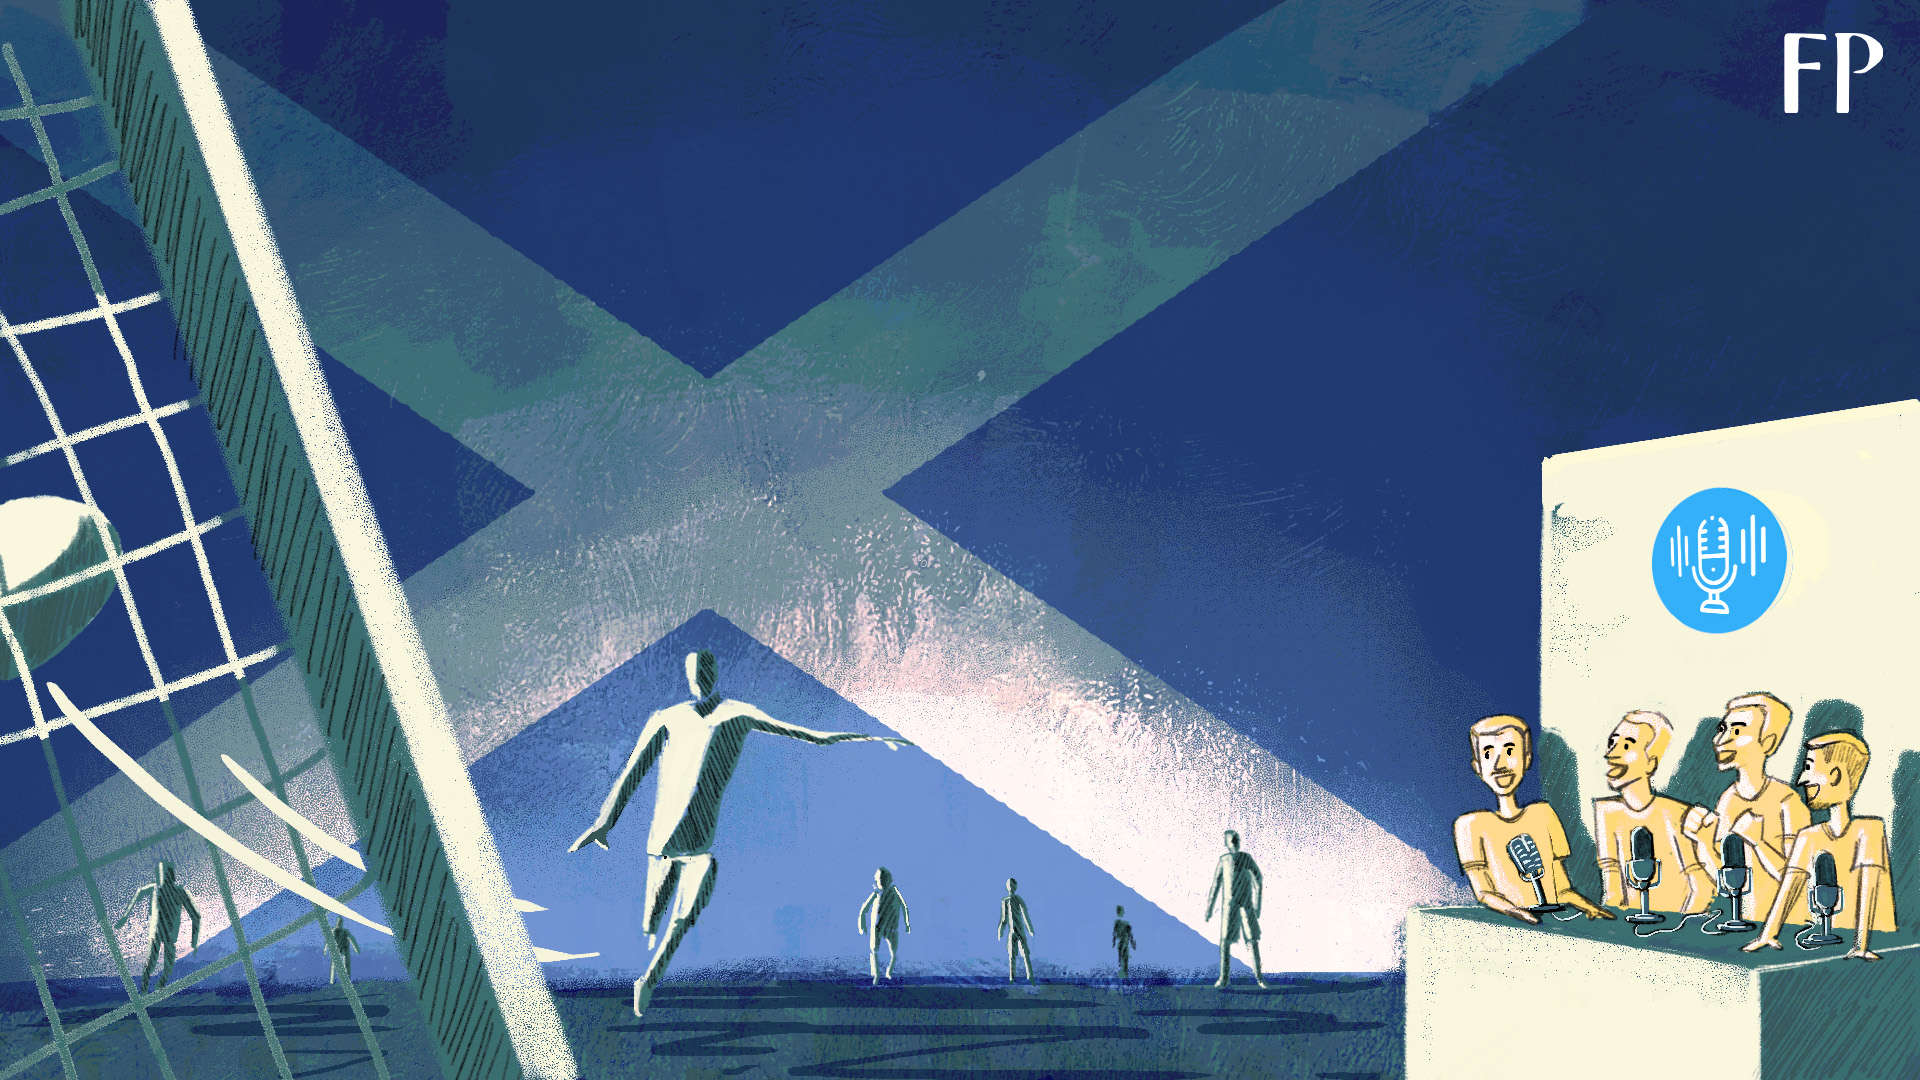 Vom Podcast ins gelobte Land? Könnte Open Goal den Erfolg ihres Studios auf dem Platz wiederholen und in der schottischen Fußballpyramide aufsteigen?